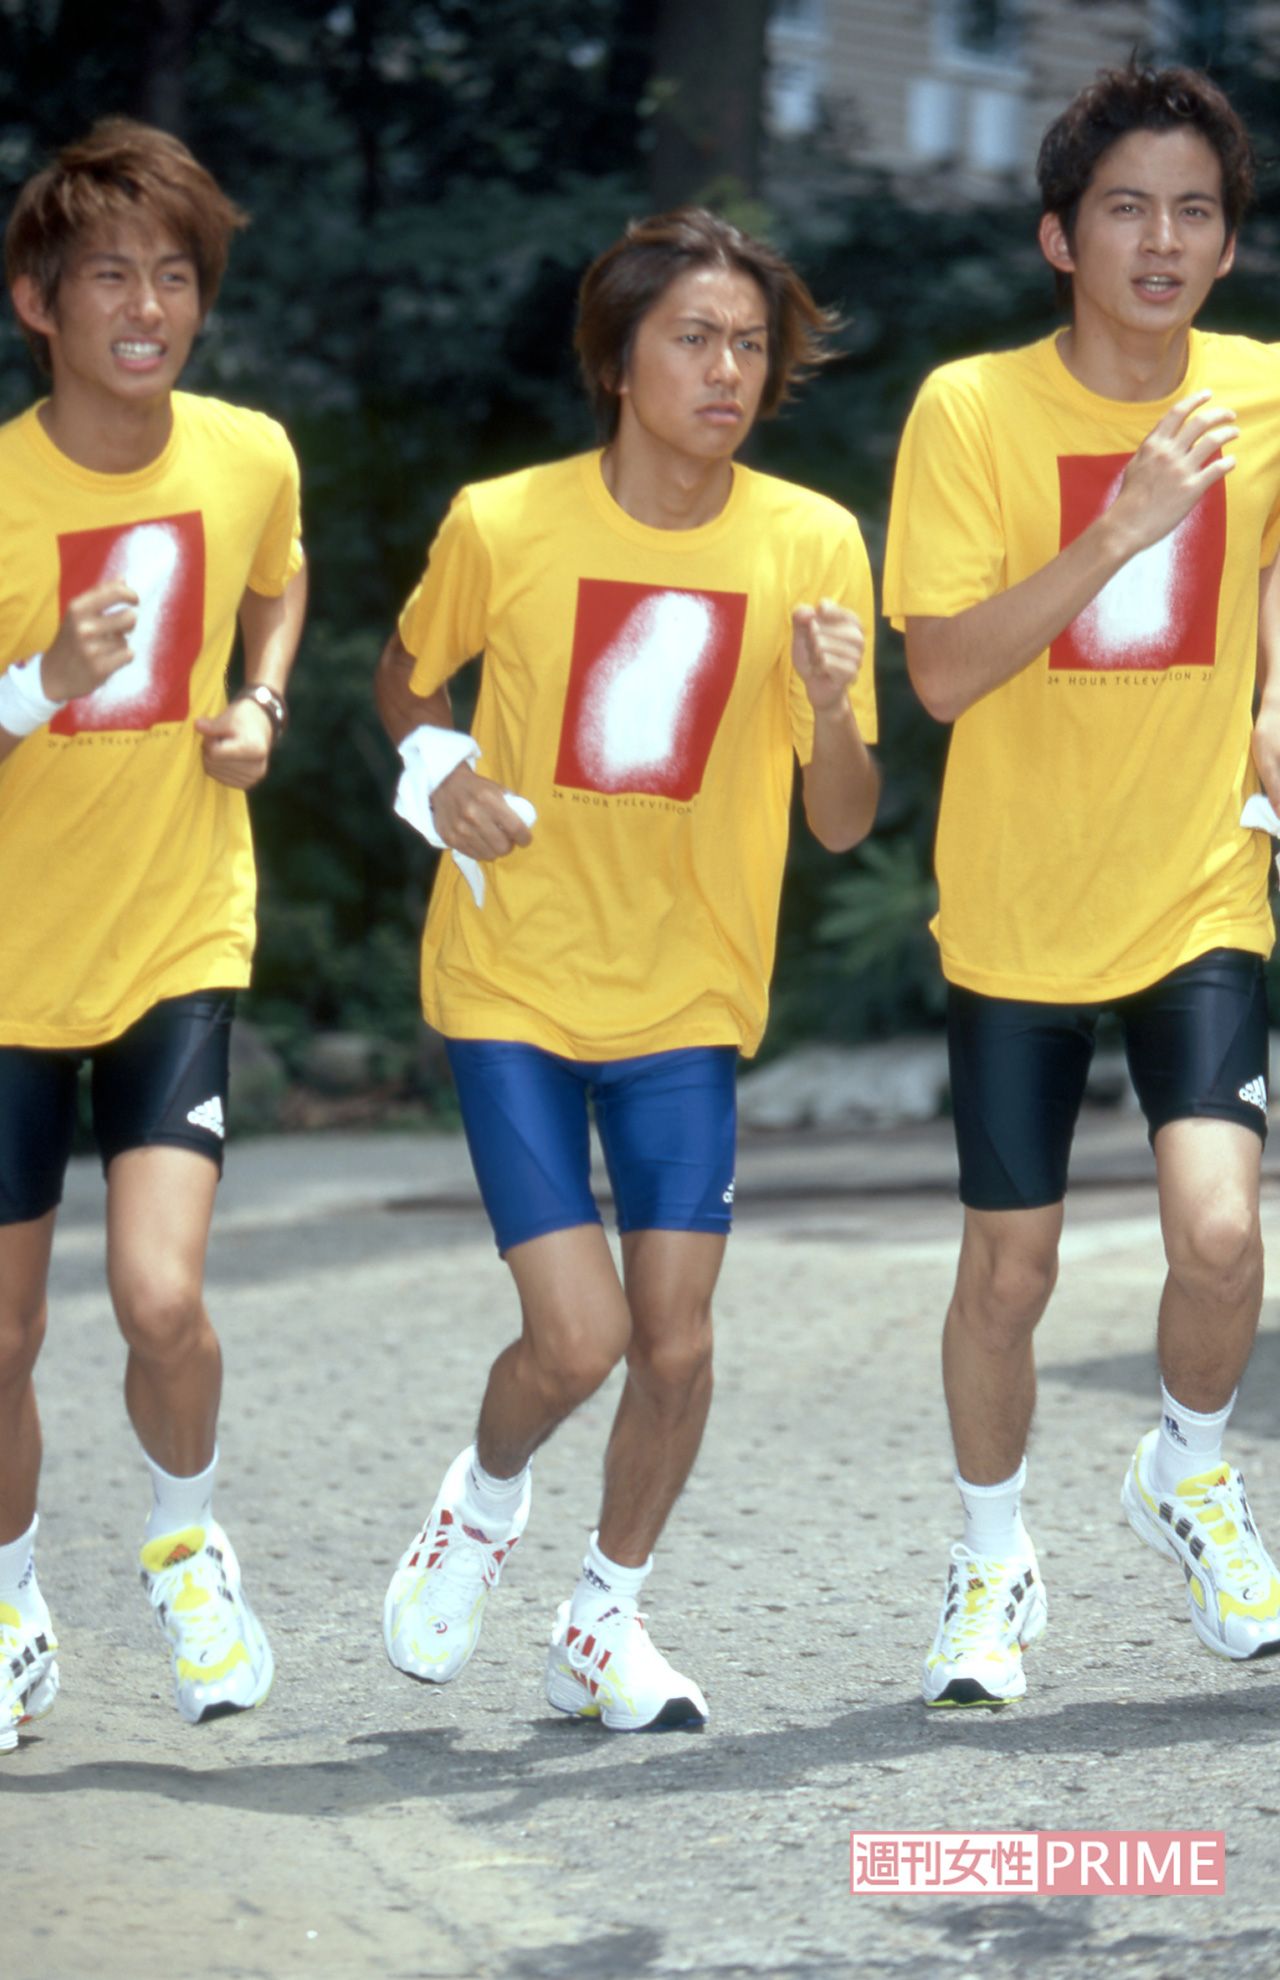 森田剛の画像 写真 98年の日本テレビ系 24時間テレビ でチャリティーマラソンランナーを務めたv6 17歳の岡田はやせ細く 6枚目 週刊女性prime